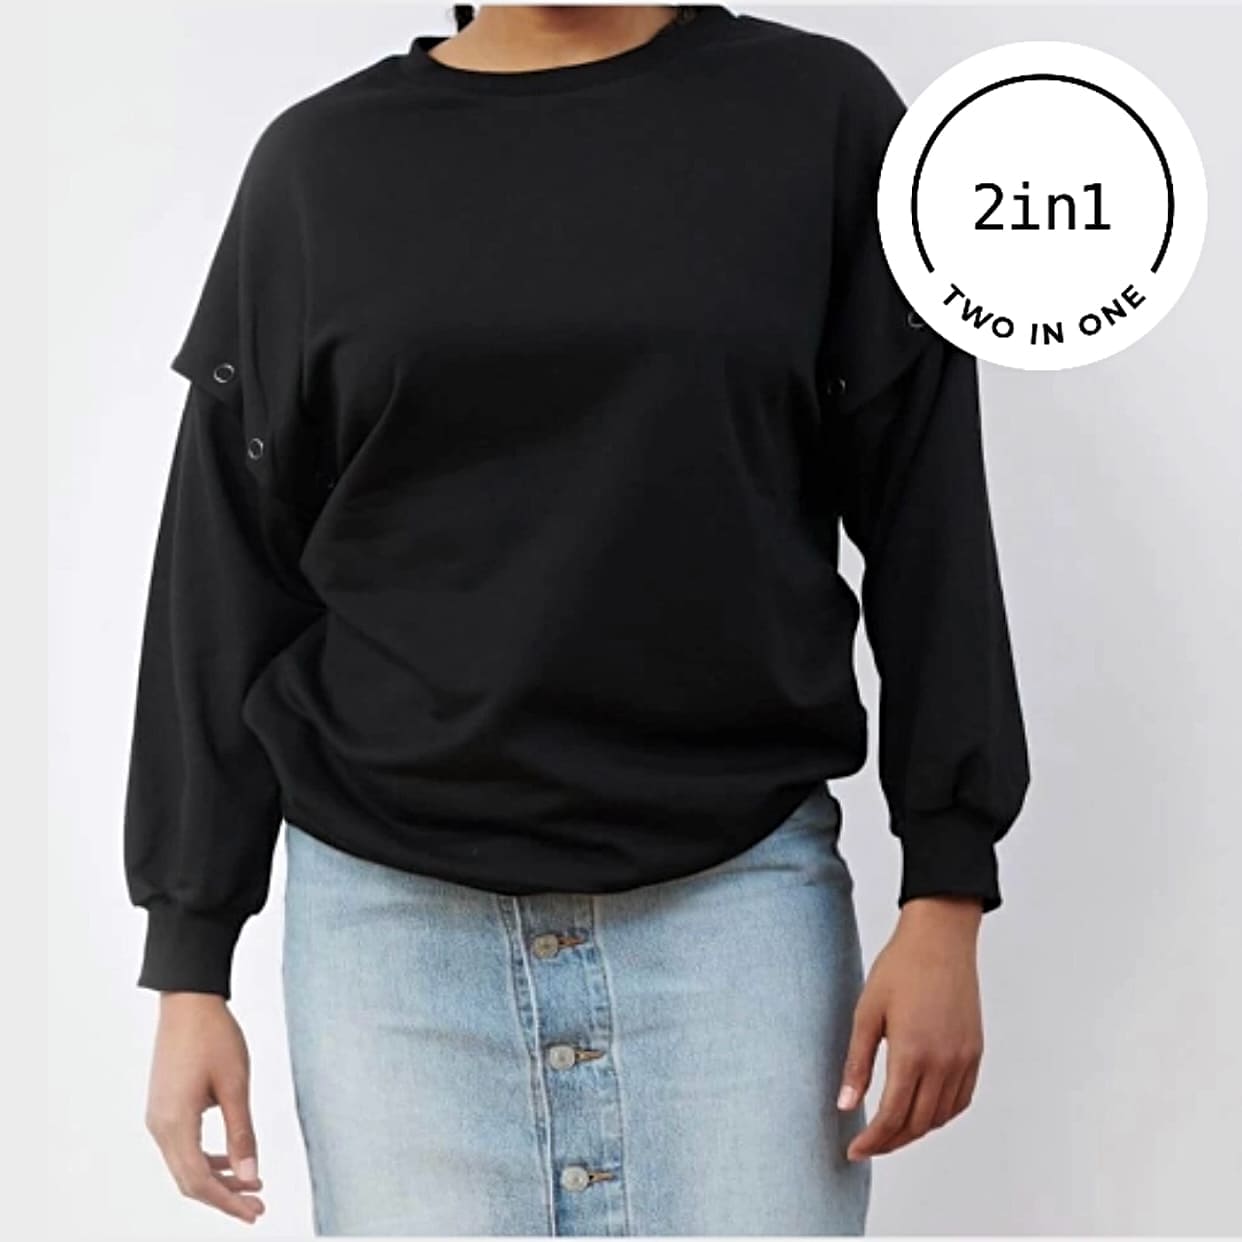 Schwarzes Sweatshirt mit abnehmbaren Ärmeln an Frauenkörper mit weißem, rundem 2IN1-Icon